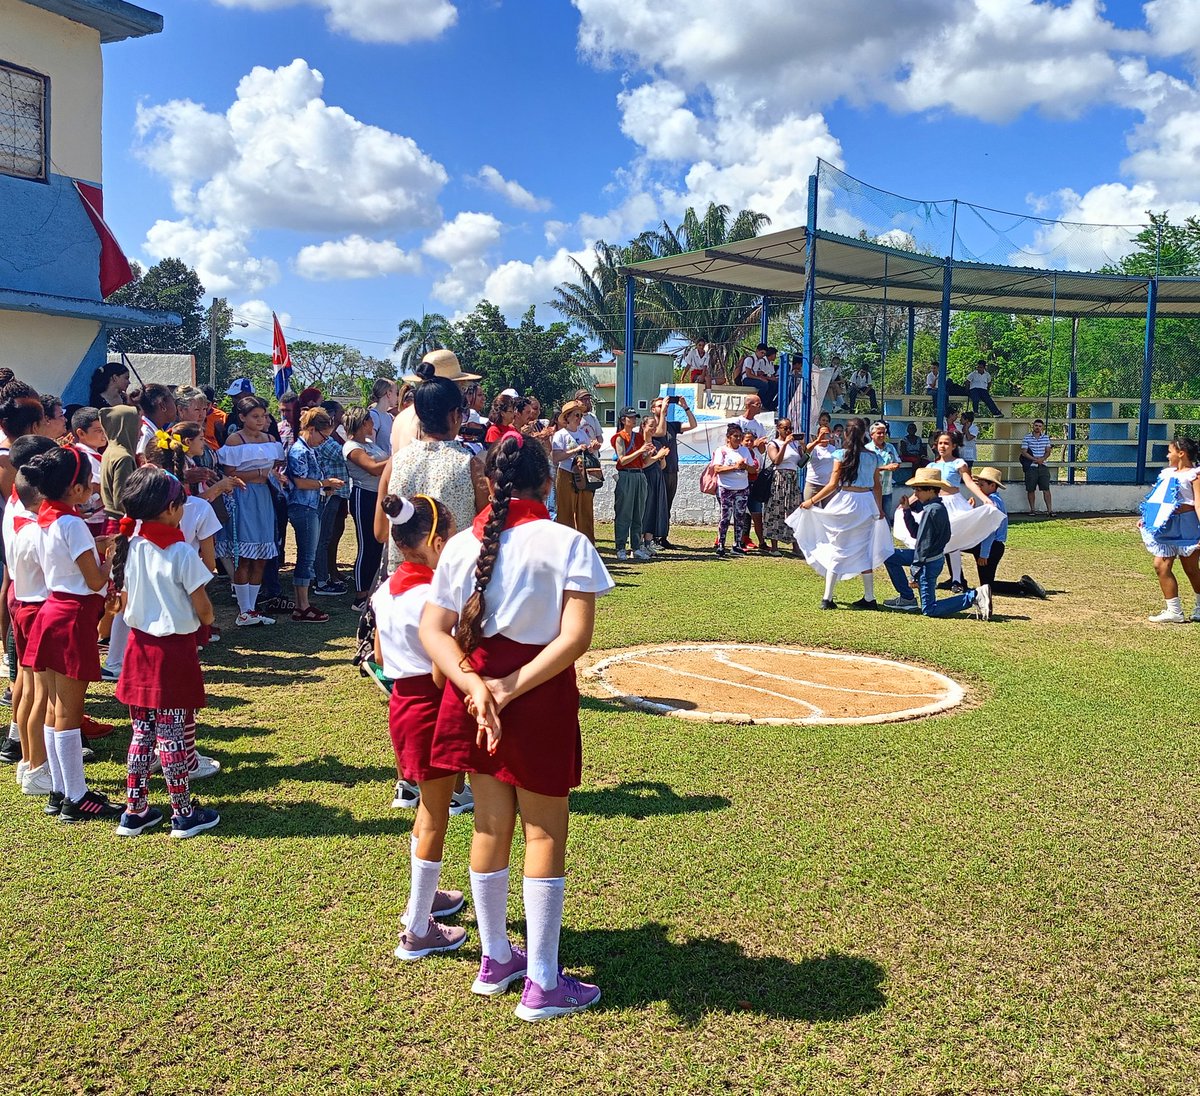 Con su habitual hospitalidad, vecinos de Manajanabo, en Santa Clara, recibieron en el estadio de la comunidad a @GloriaLaRiva y otros integrantes del proyecto solidario 'Hatuey', de Estados Unidos. #Cuba #CDRCuba #SomosDelBarrio #CubaEsSolidaridad